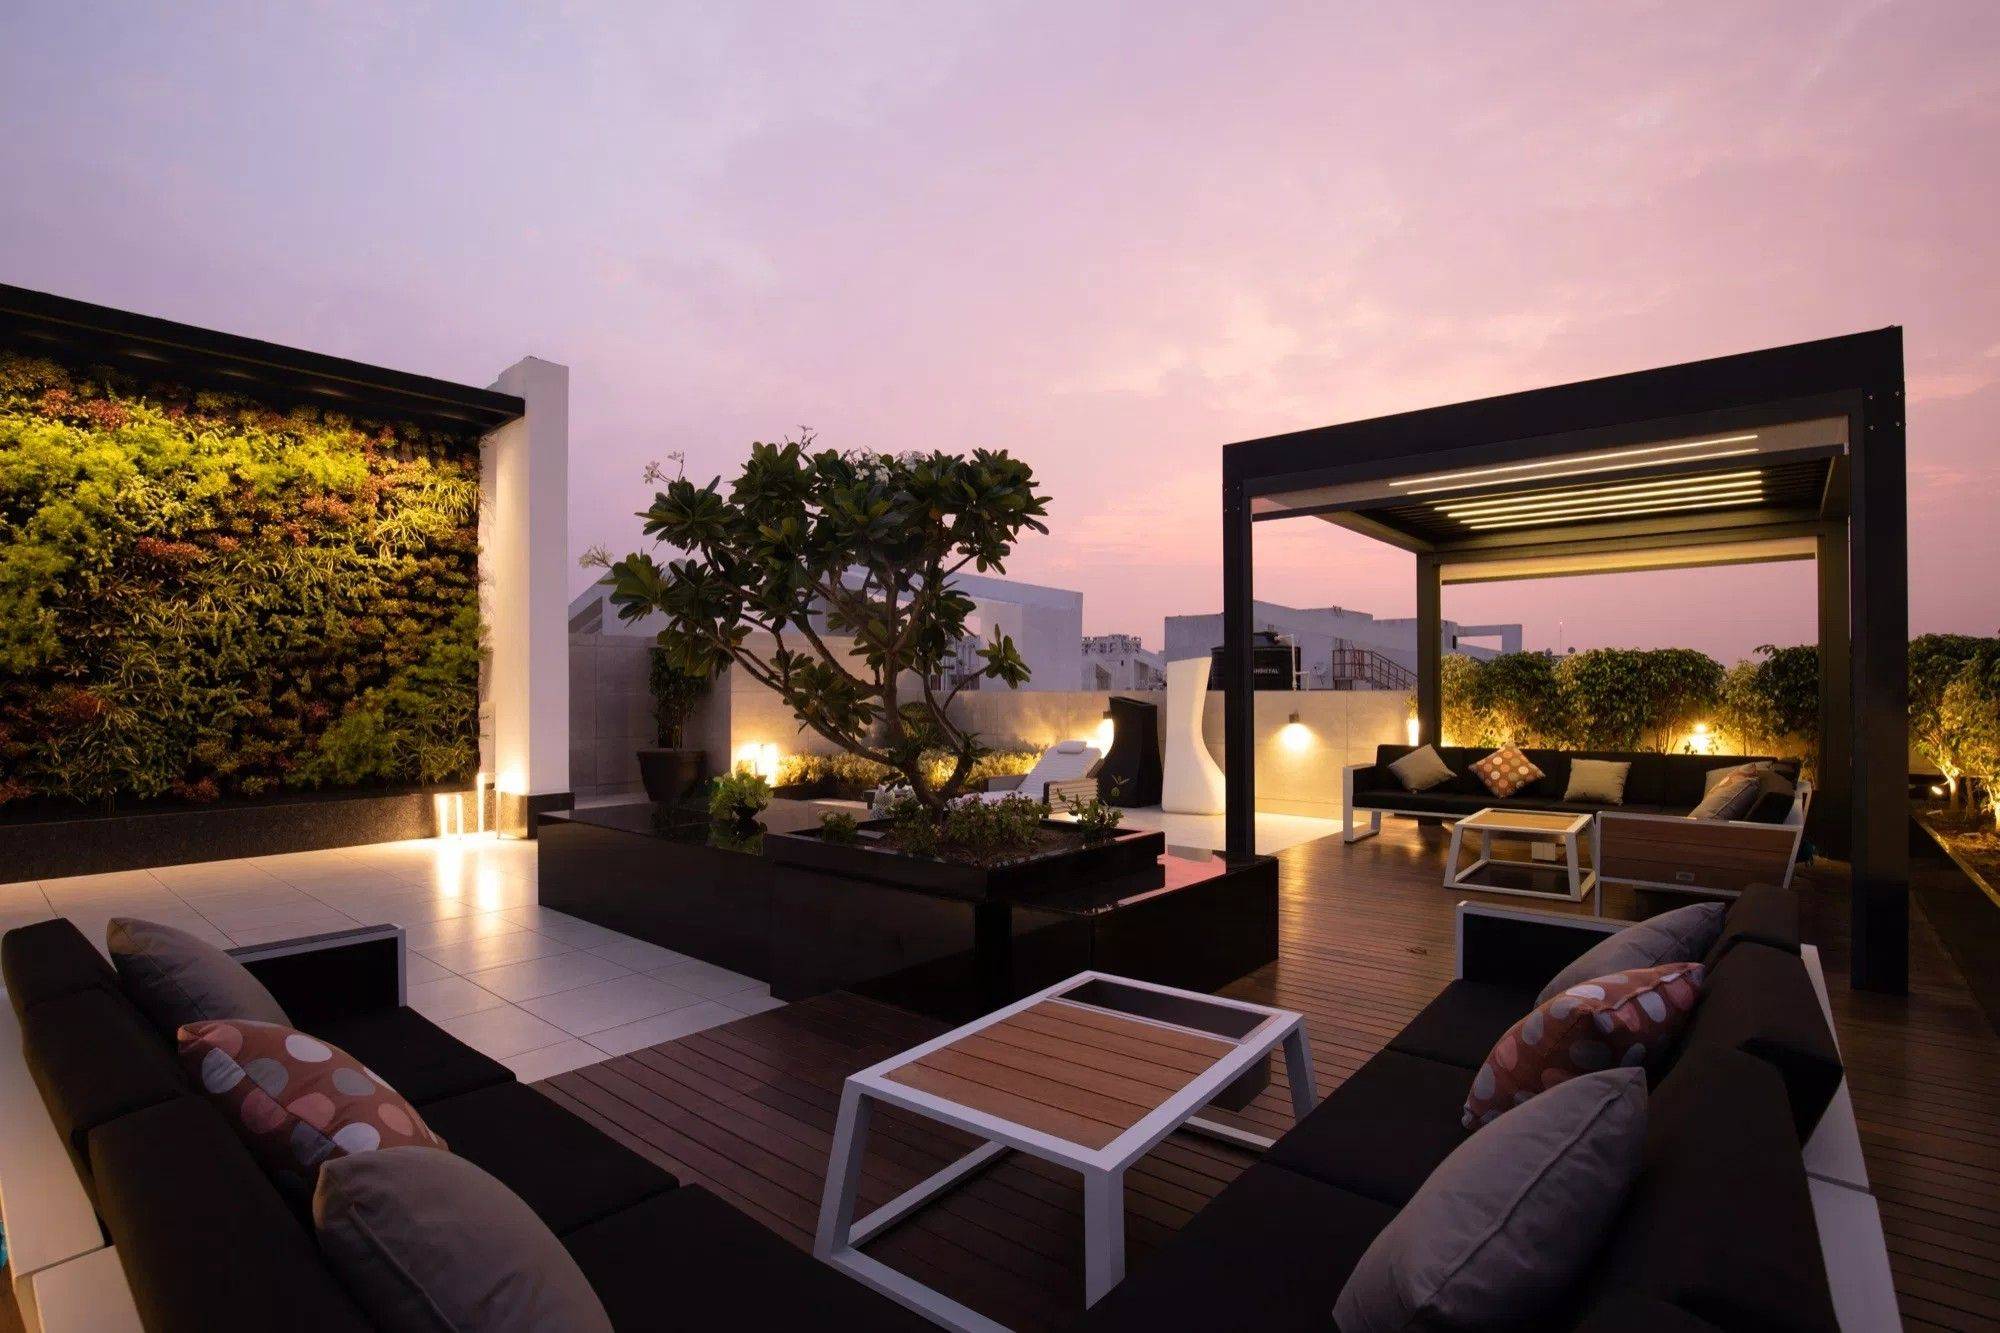 Small Apartment Balcony Garden Design Ideas Terrace Decor Small